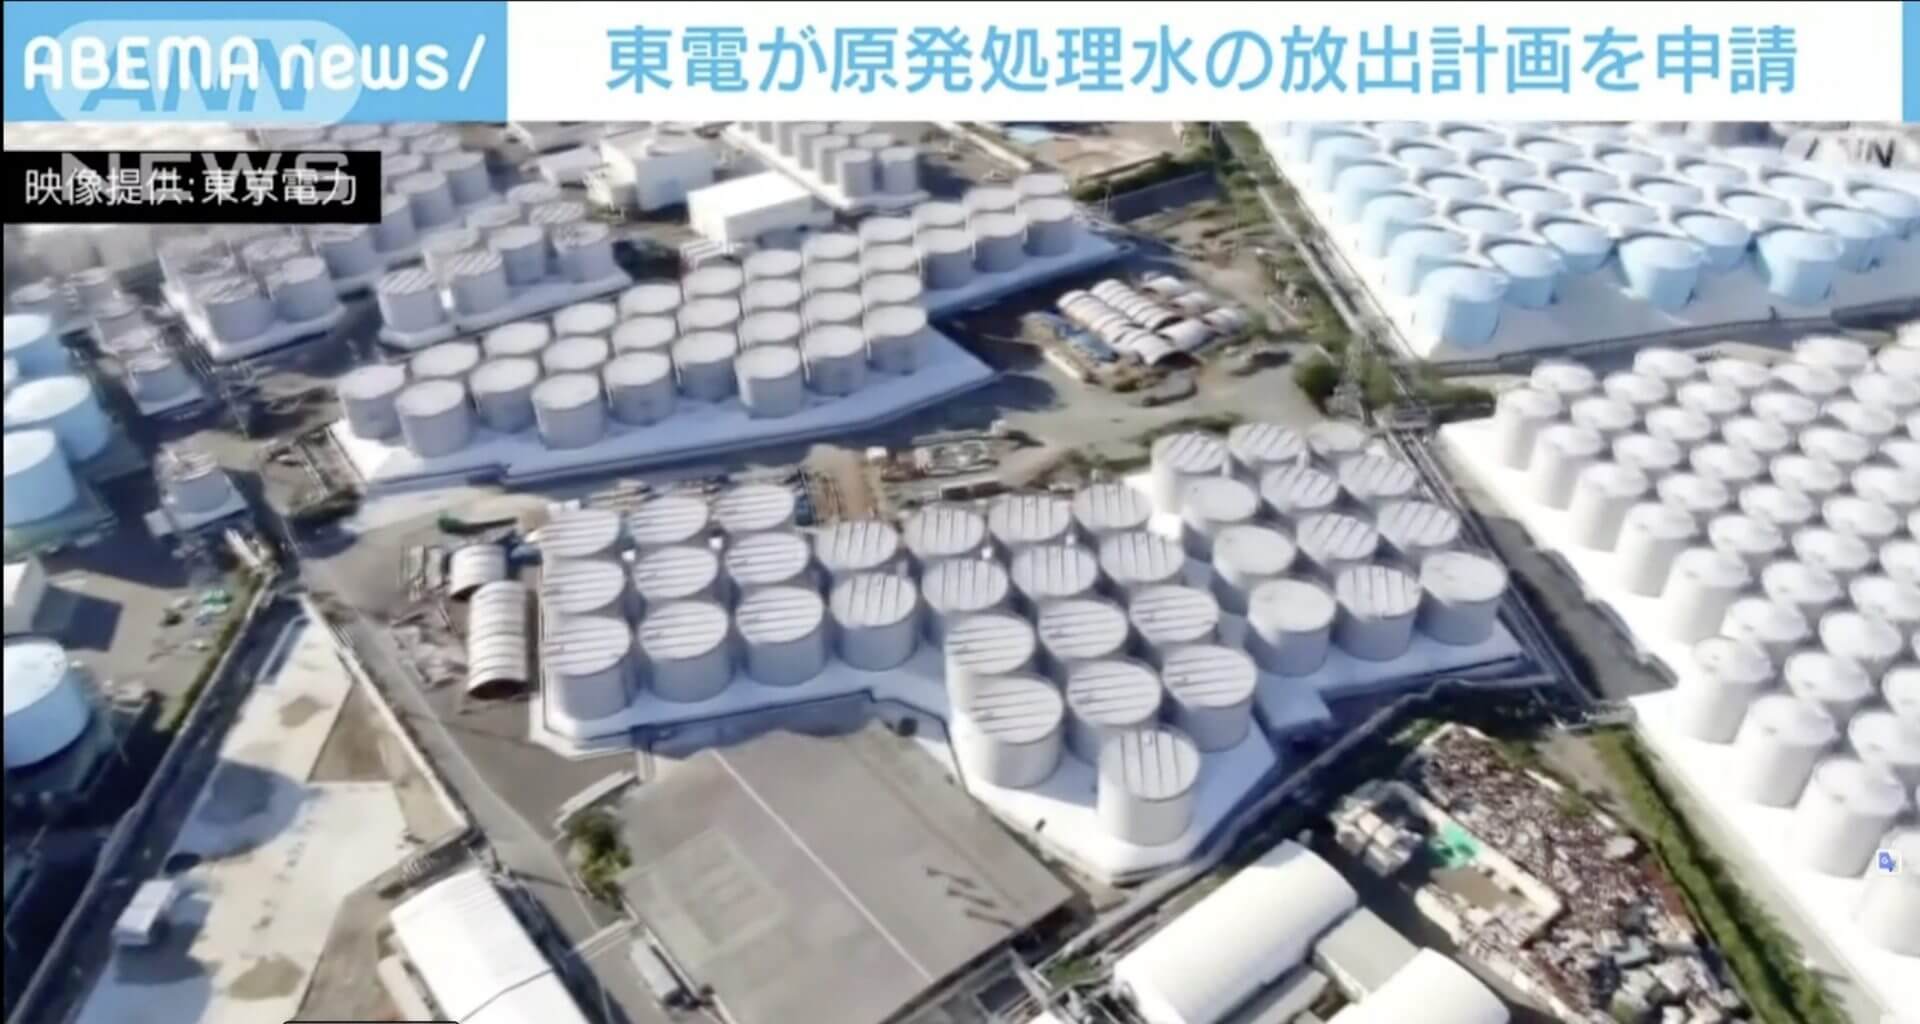 Comissão de Regulamentação apresenta plano preliminar de liberação da água tratada para a Usina Nuclear de Fukushima